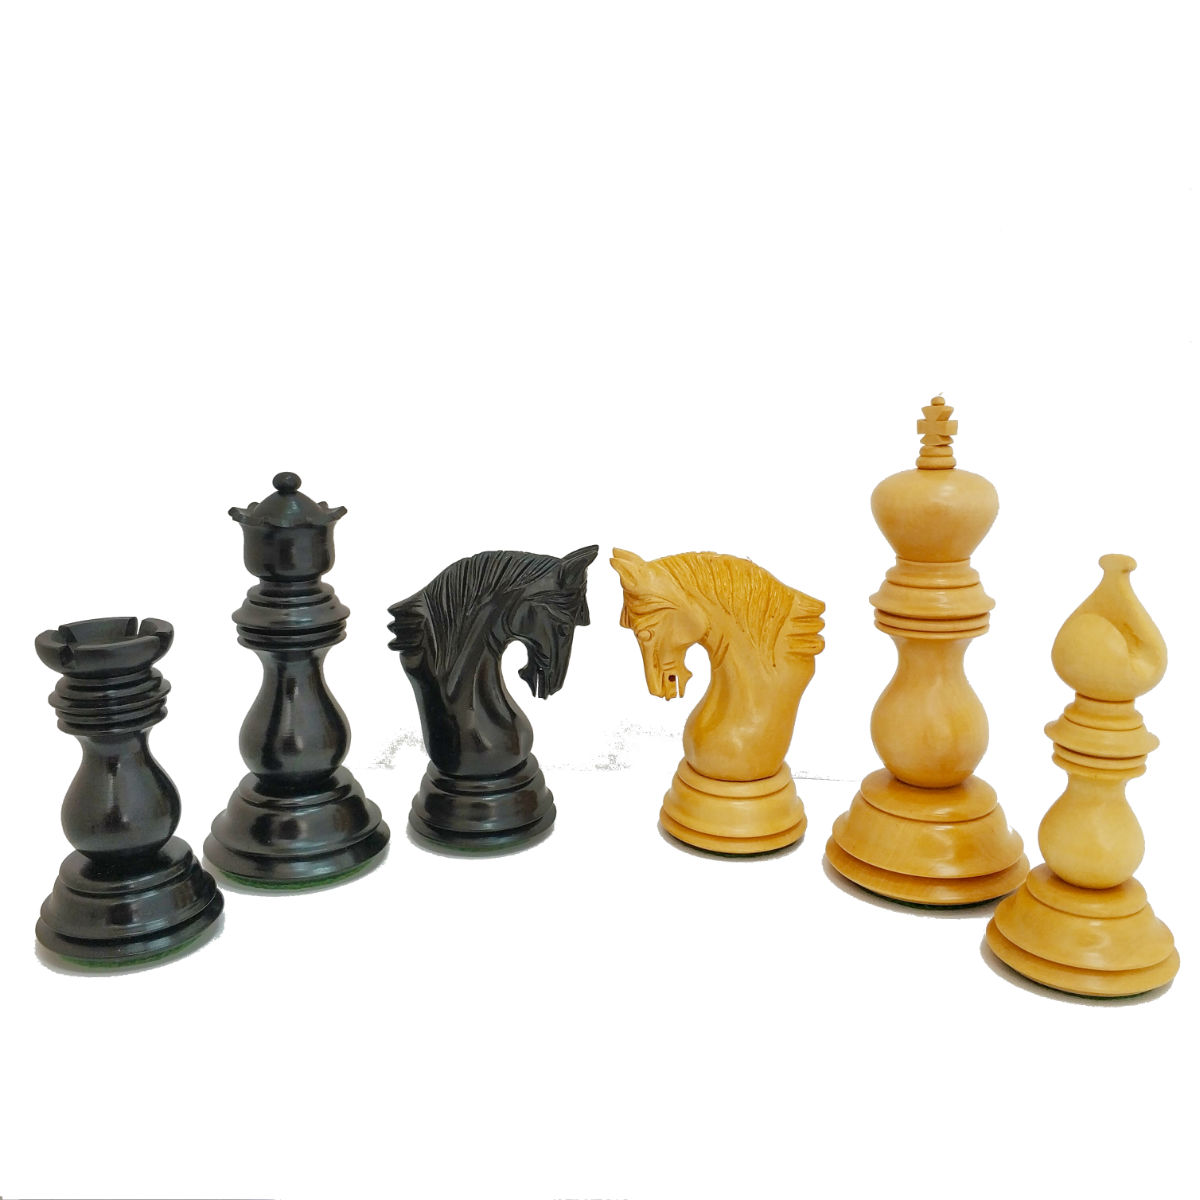 כלי שחמט אלטמורה אבוני Altamura Ebony